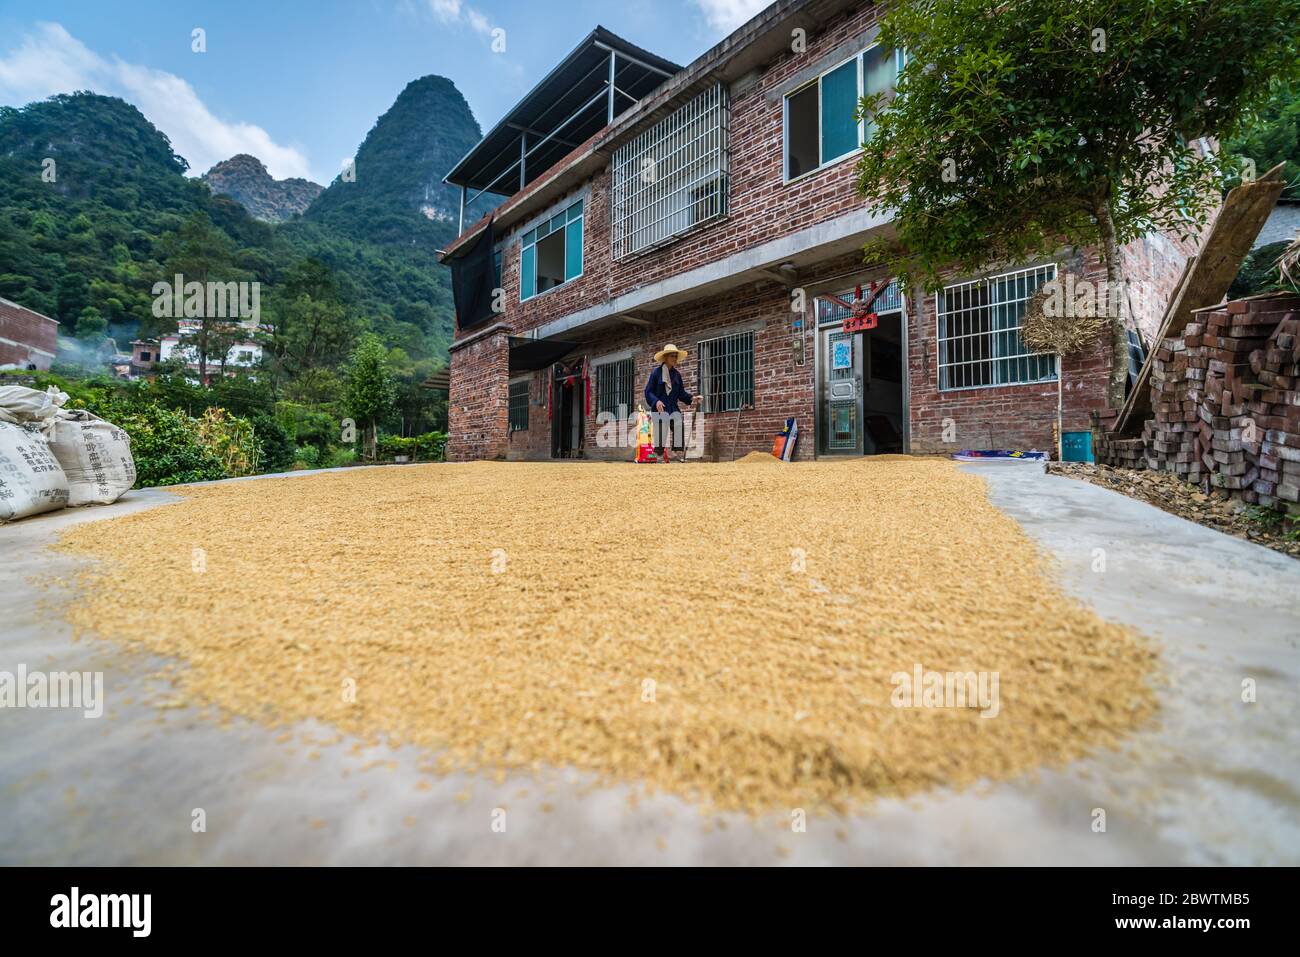 Yangshuo, Cina - Agosto 2019 : Vecchia signora cinese che indossa cappello di paglia che cammina su un percorso stretto vicino alla grande quantità di grani e fagioli disposti sulla th Foto Stock